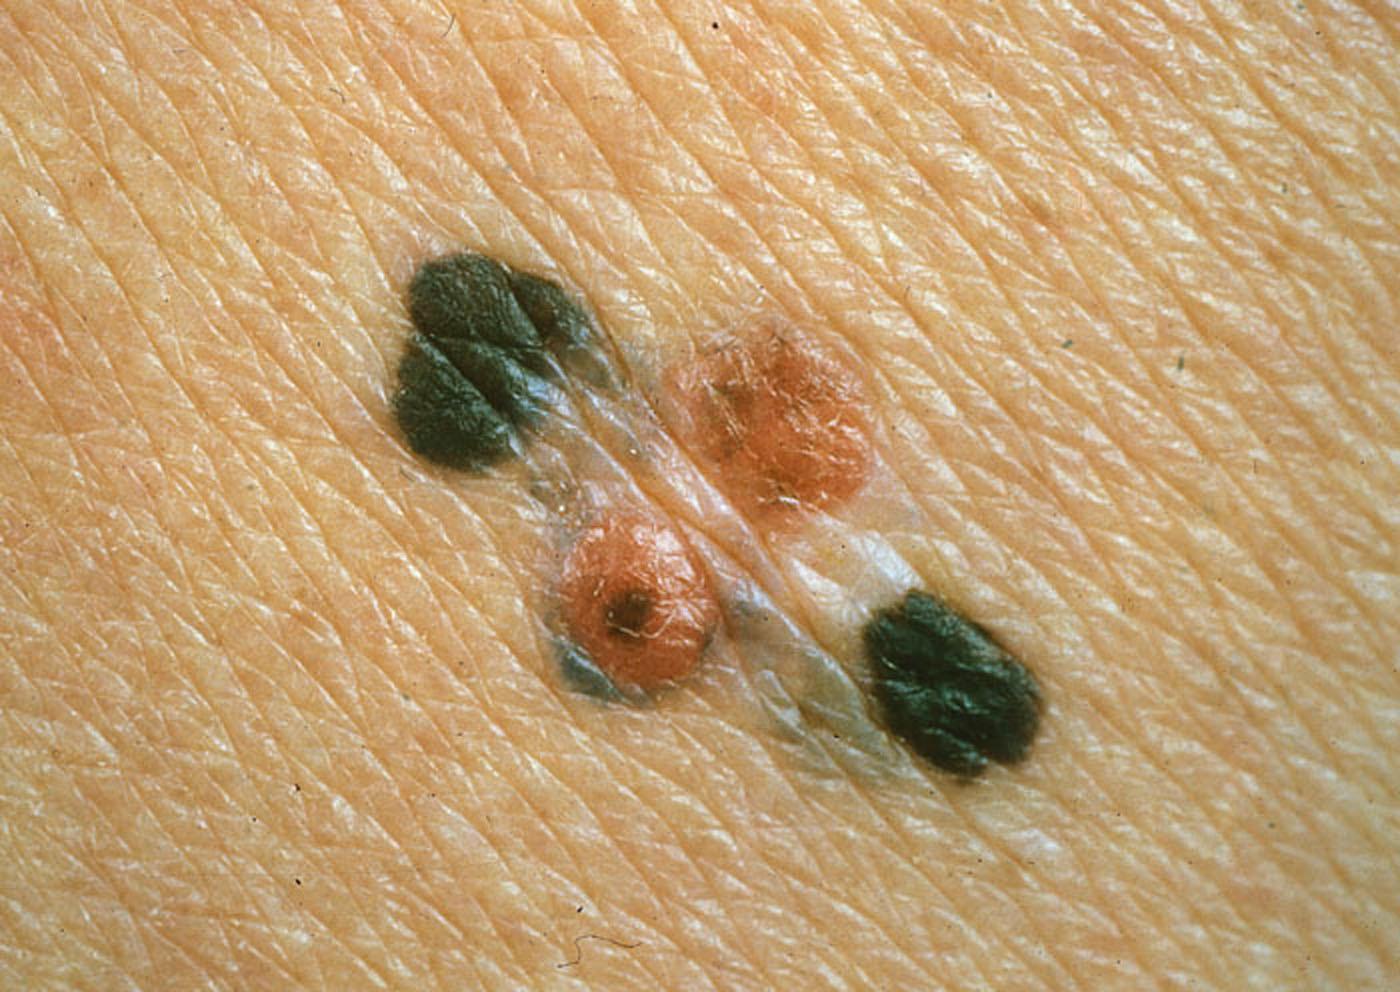 Australienska forskare har utvecklat ett nytt blodtest som ska kunna identifiera tidiga symptom på hudcancerformen malignt melanom.